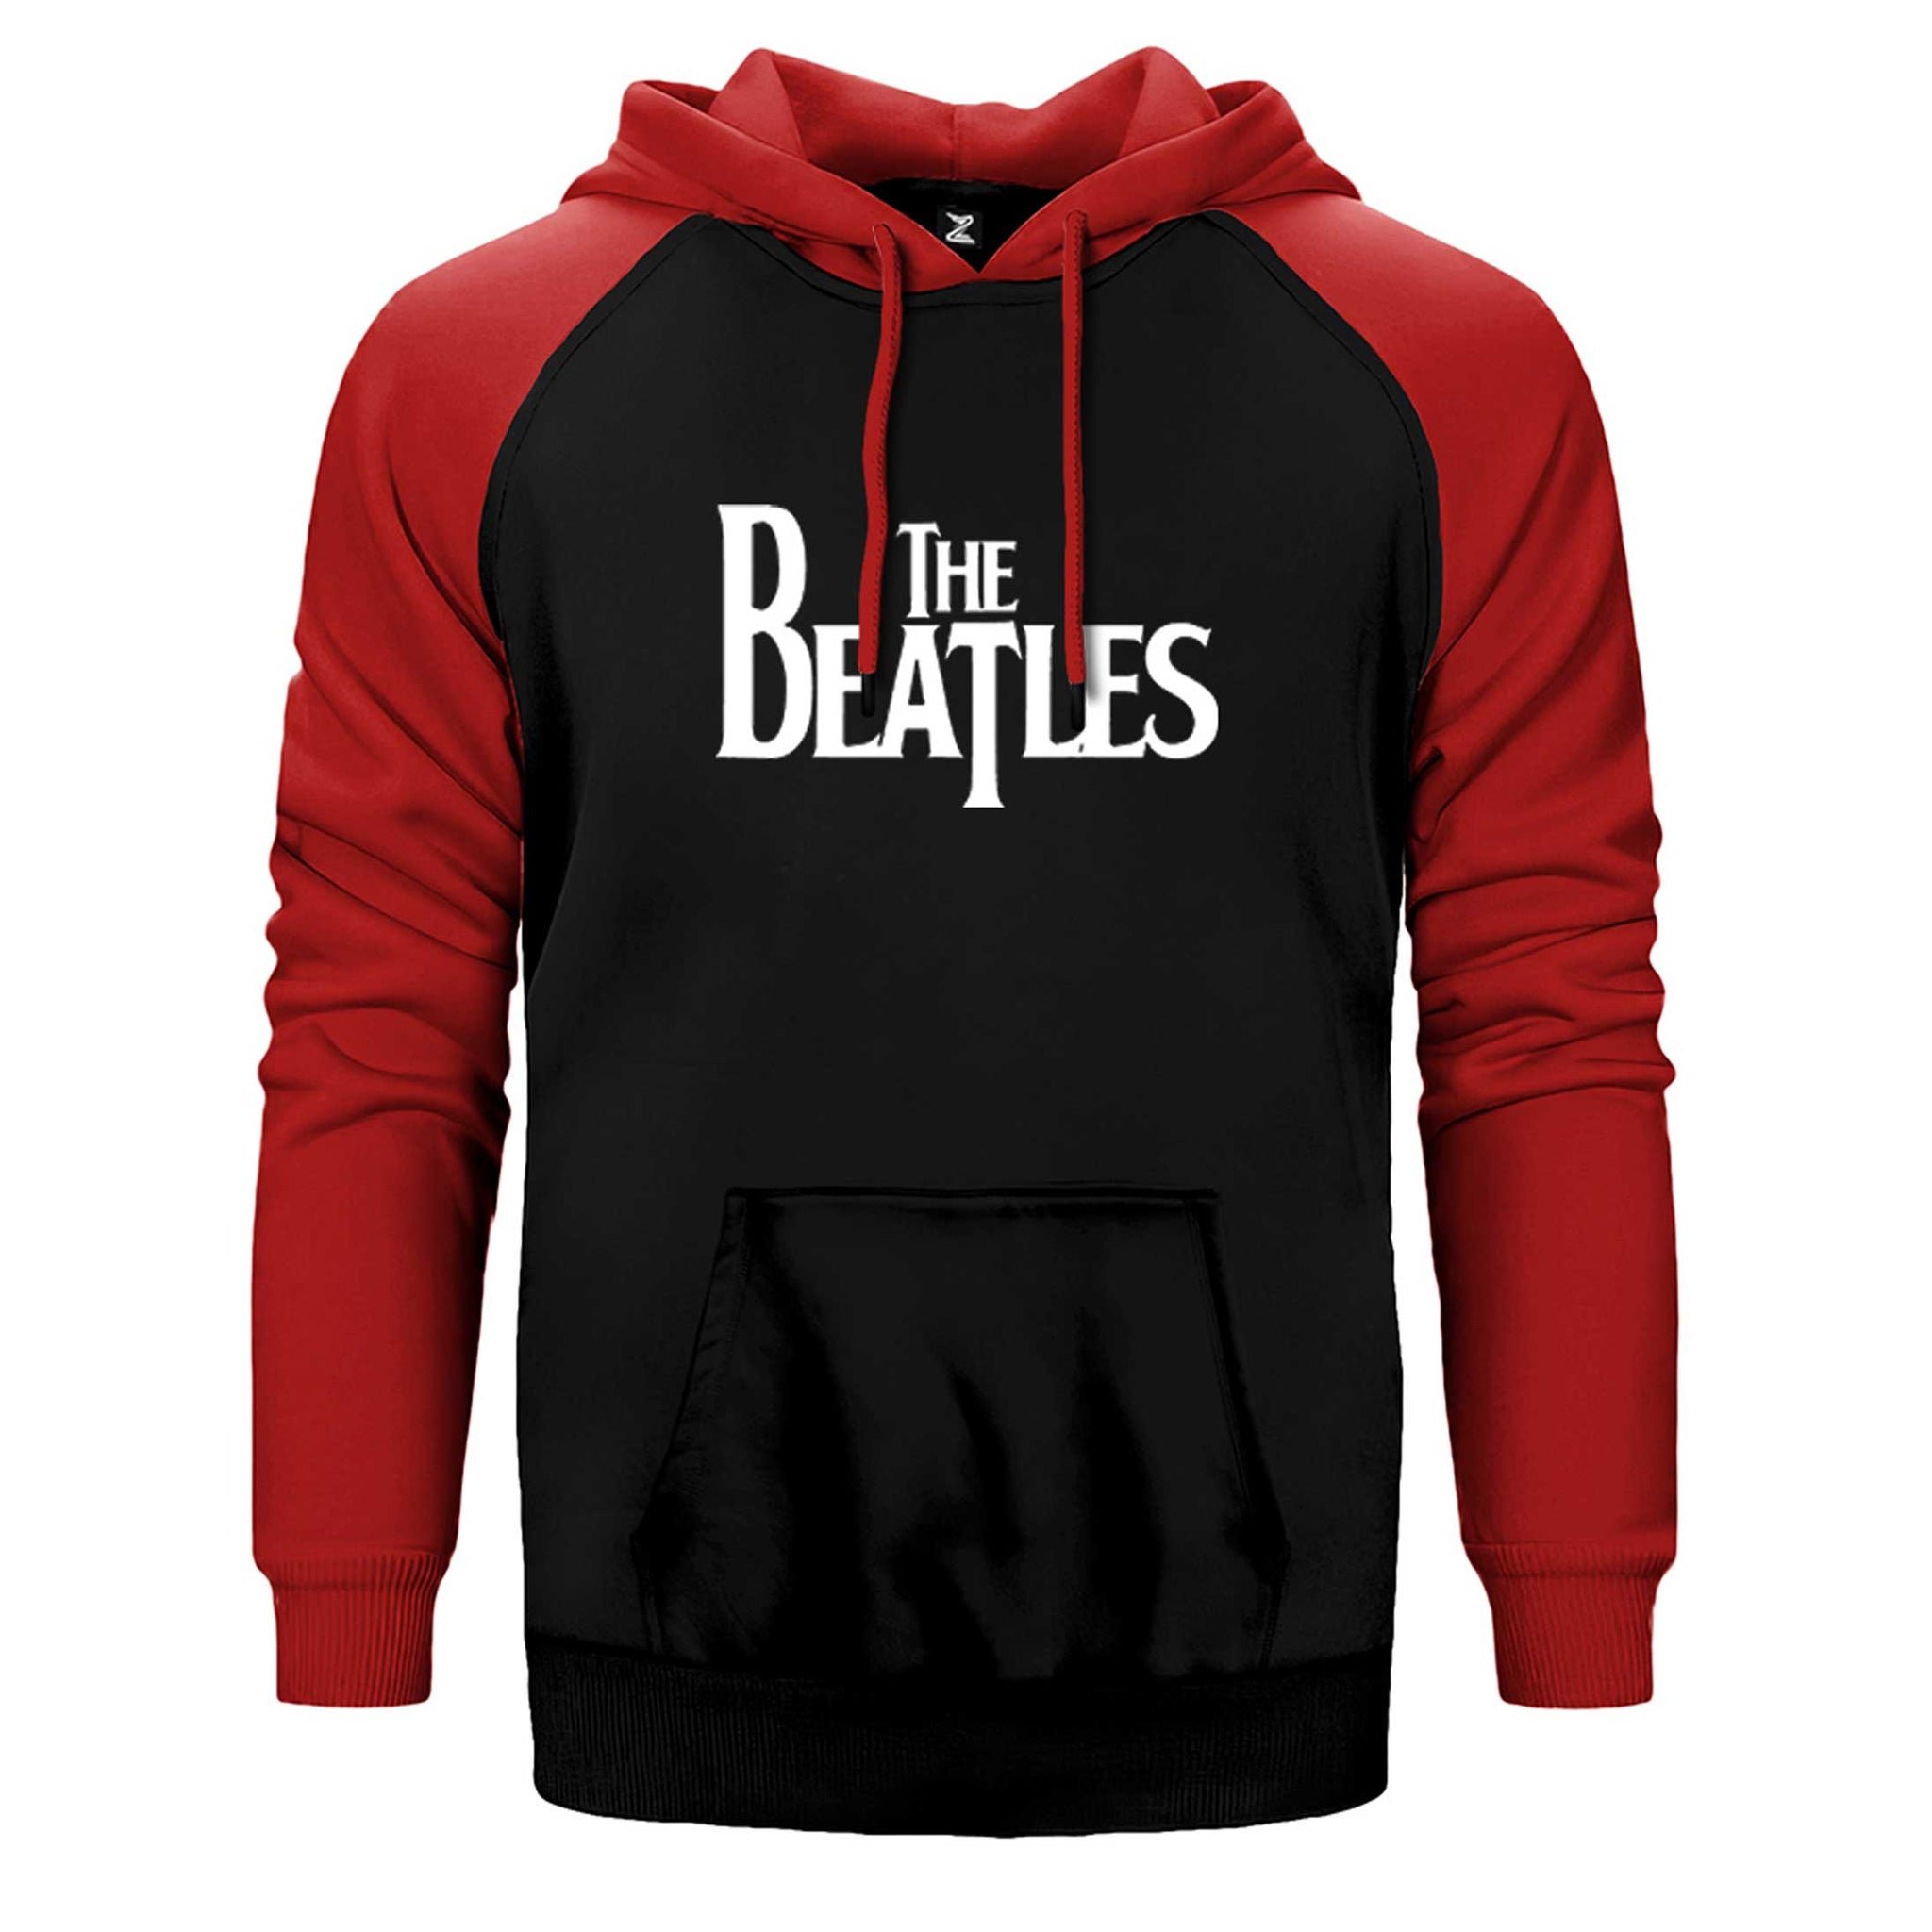 The Beatles Logo Çift Renk Reglan Kol Sweatshirt / Hoodie